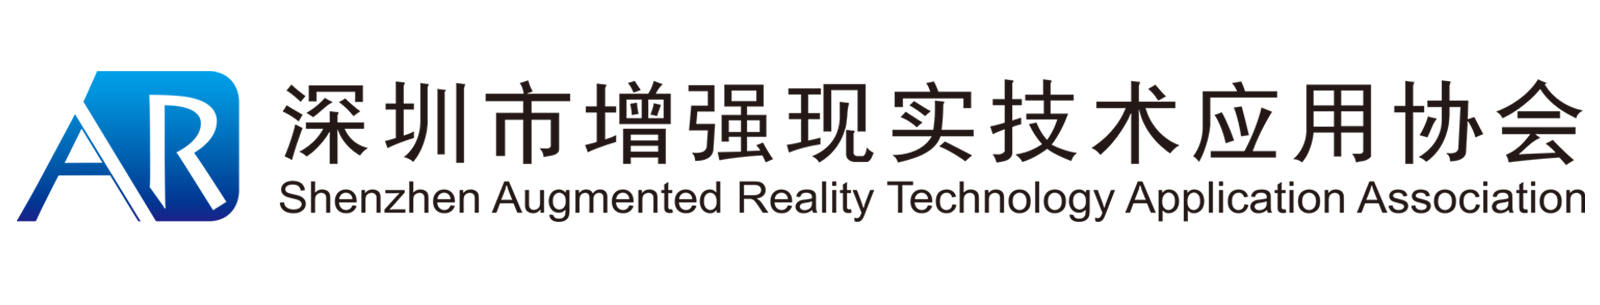 Shenzhen AR Technology Application Association